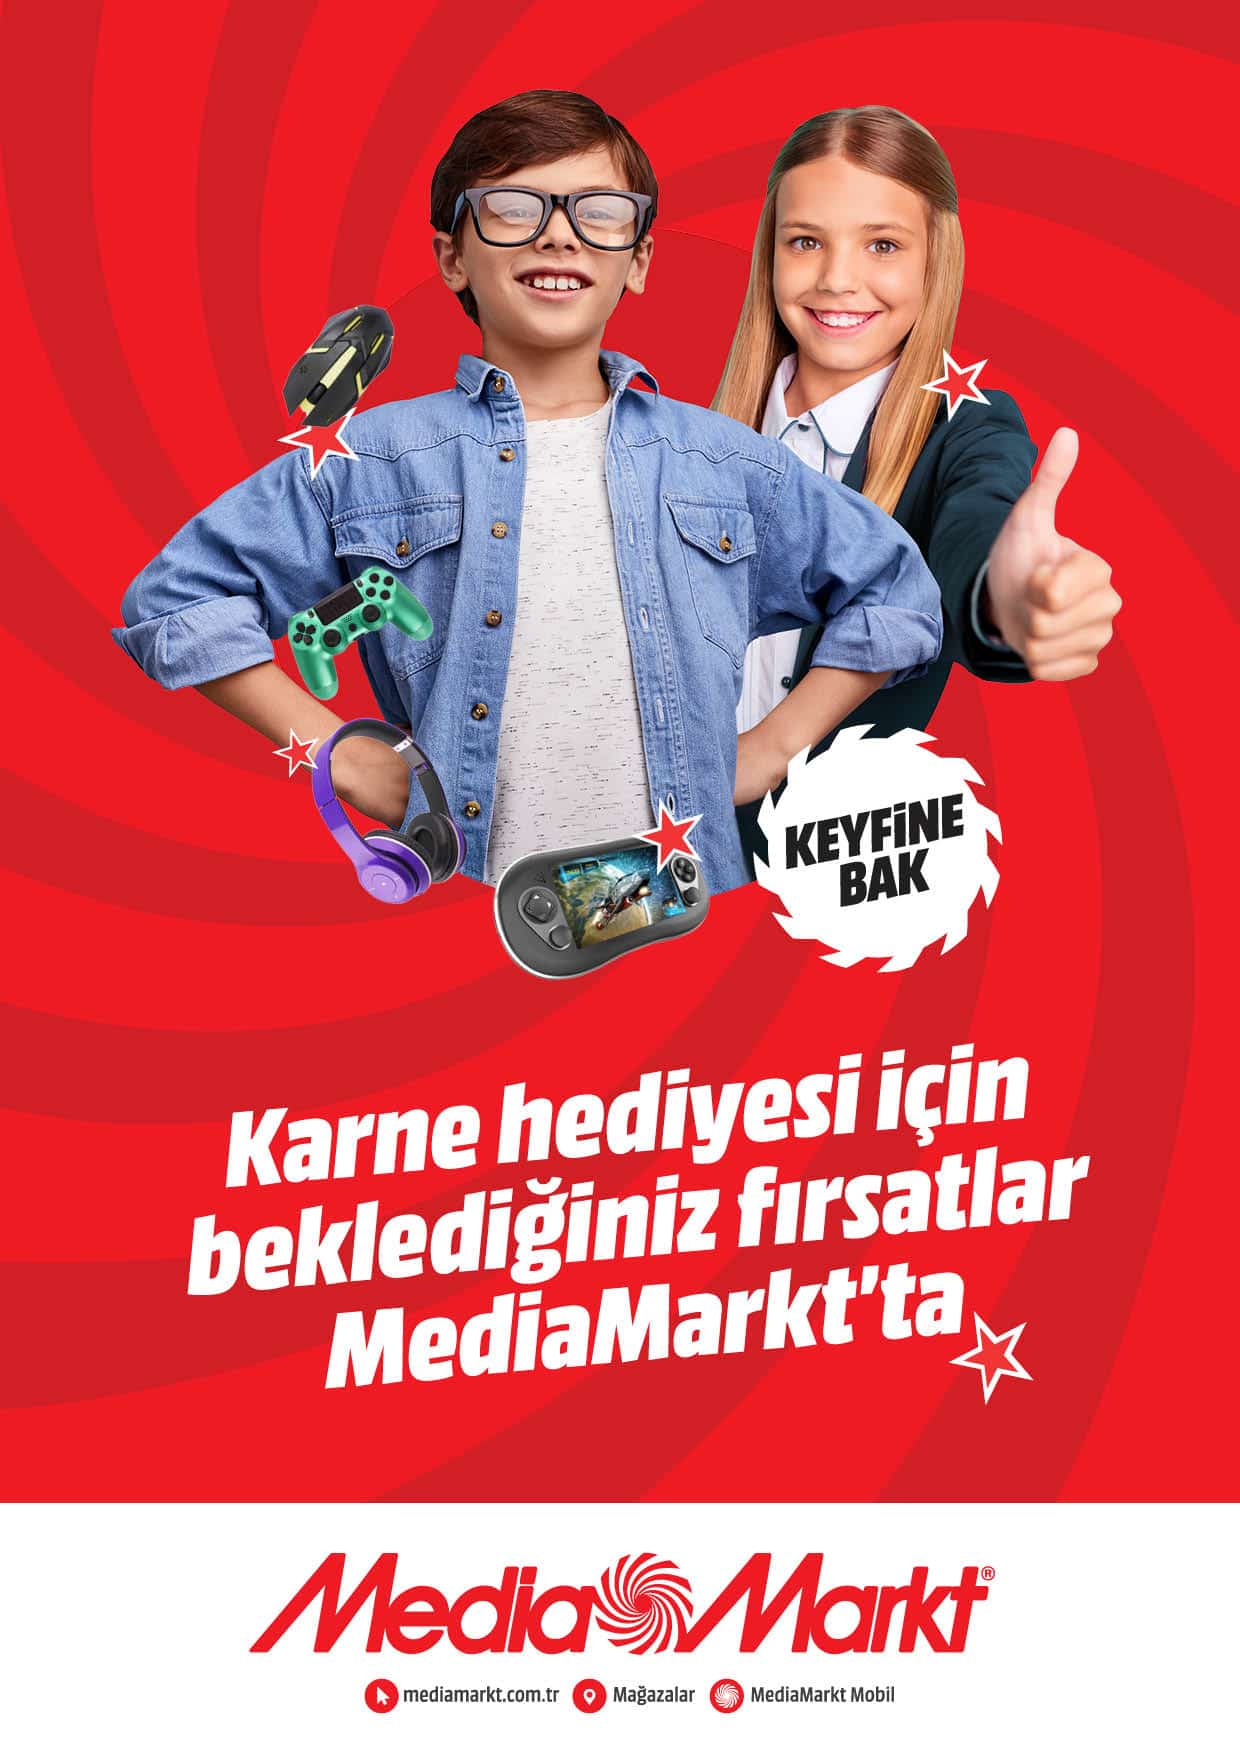 MediaMarkt'ın öğrencilere özel tatil kampanyası devam ediyor